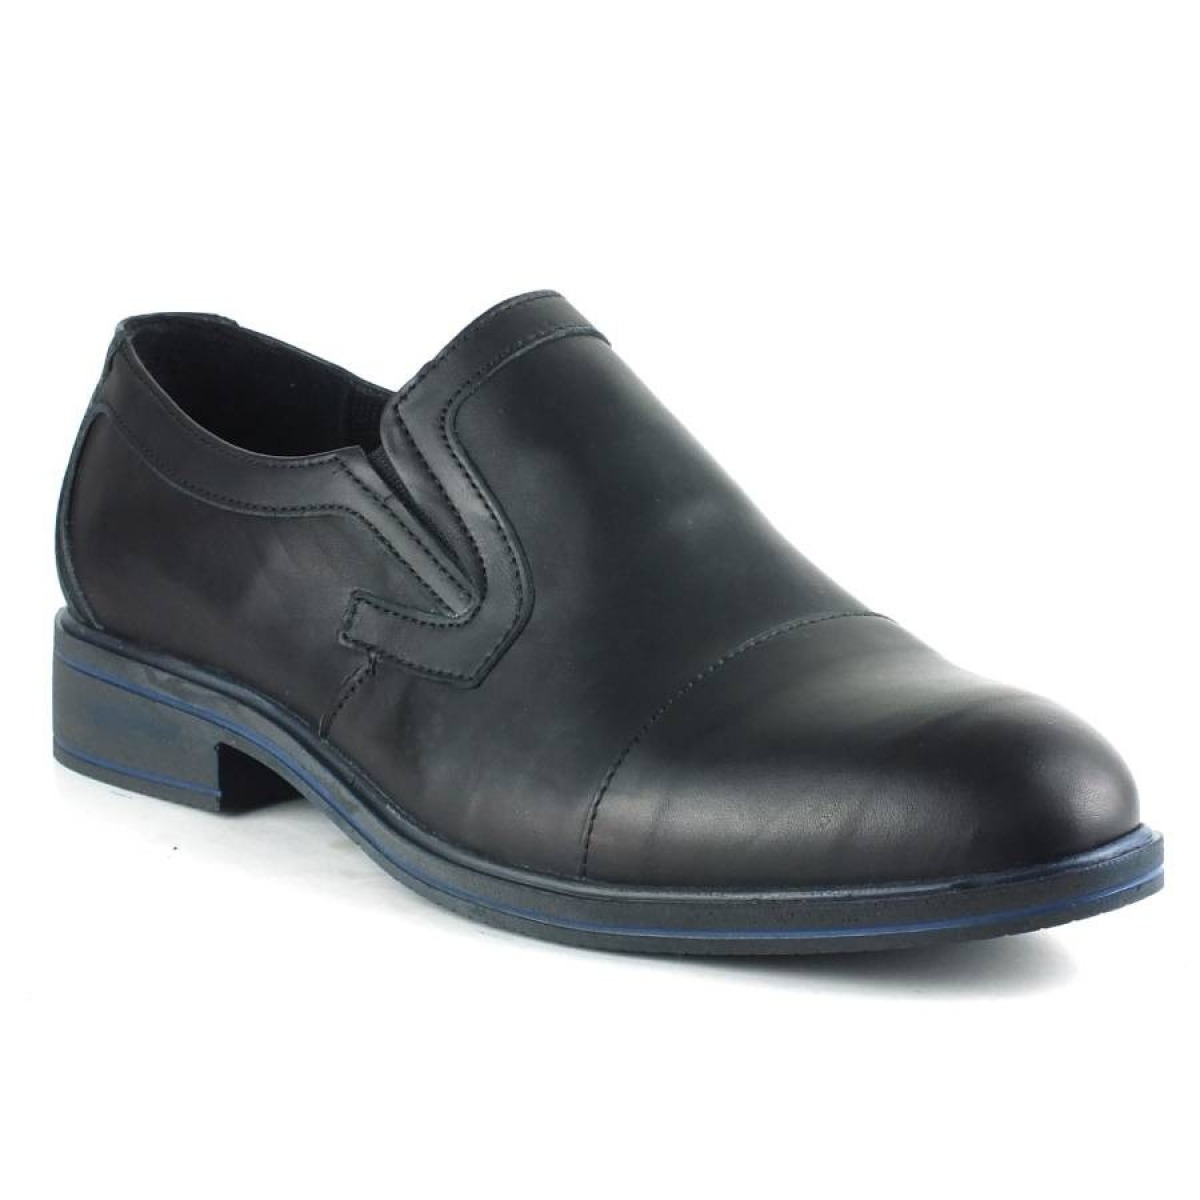 Flo Hakiki Deri Klasik Kesik Topuk Erkek Ayakkabı 5009 Siyah. 1